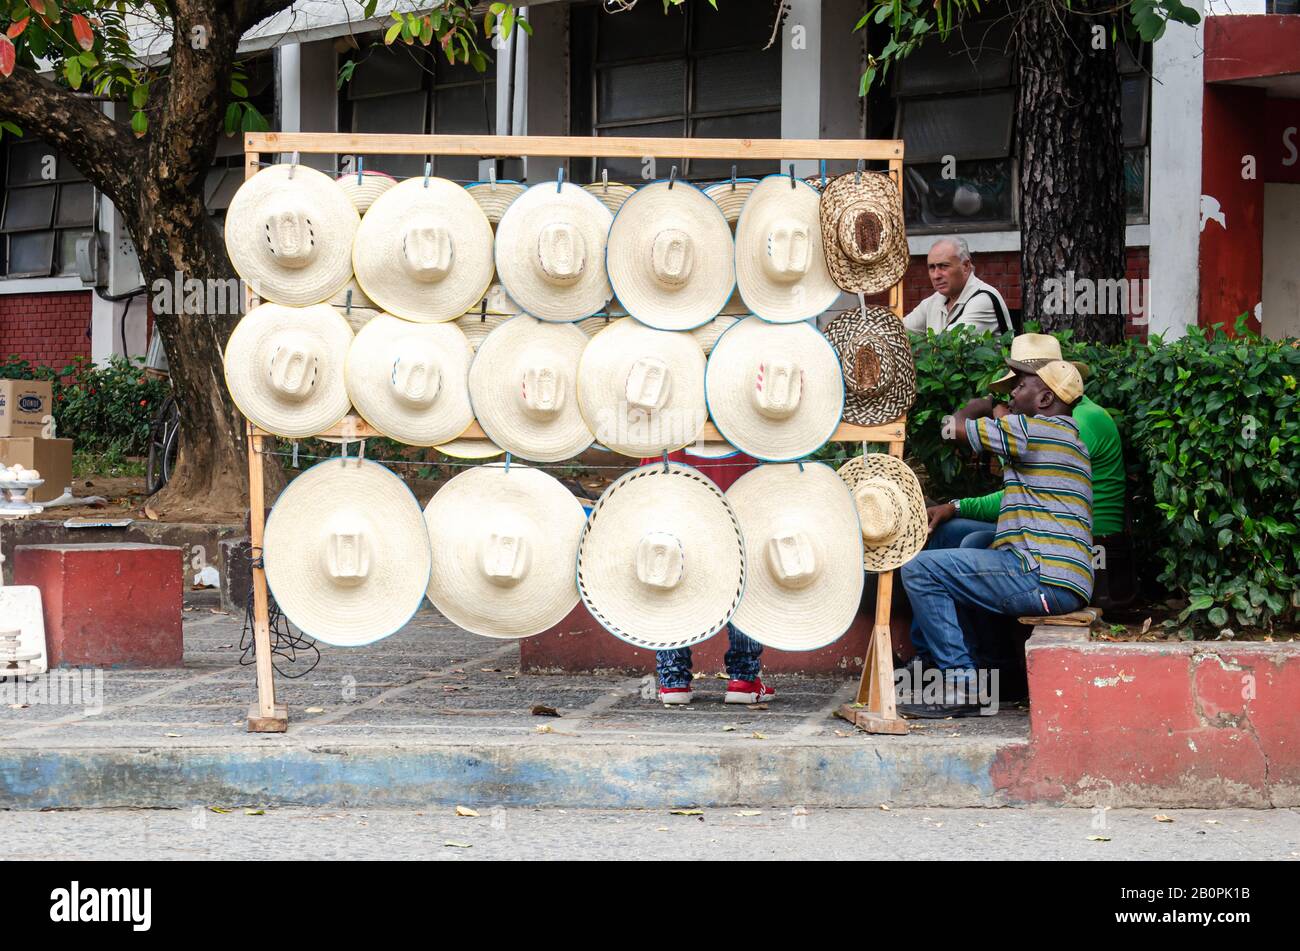 Escena de la vida cotidiana en las calles de Pinar del Río en Cuba. Foto de stock